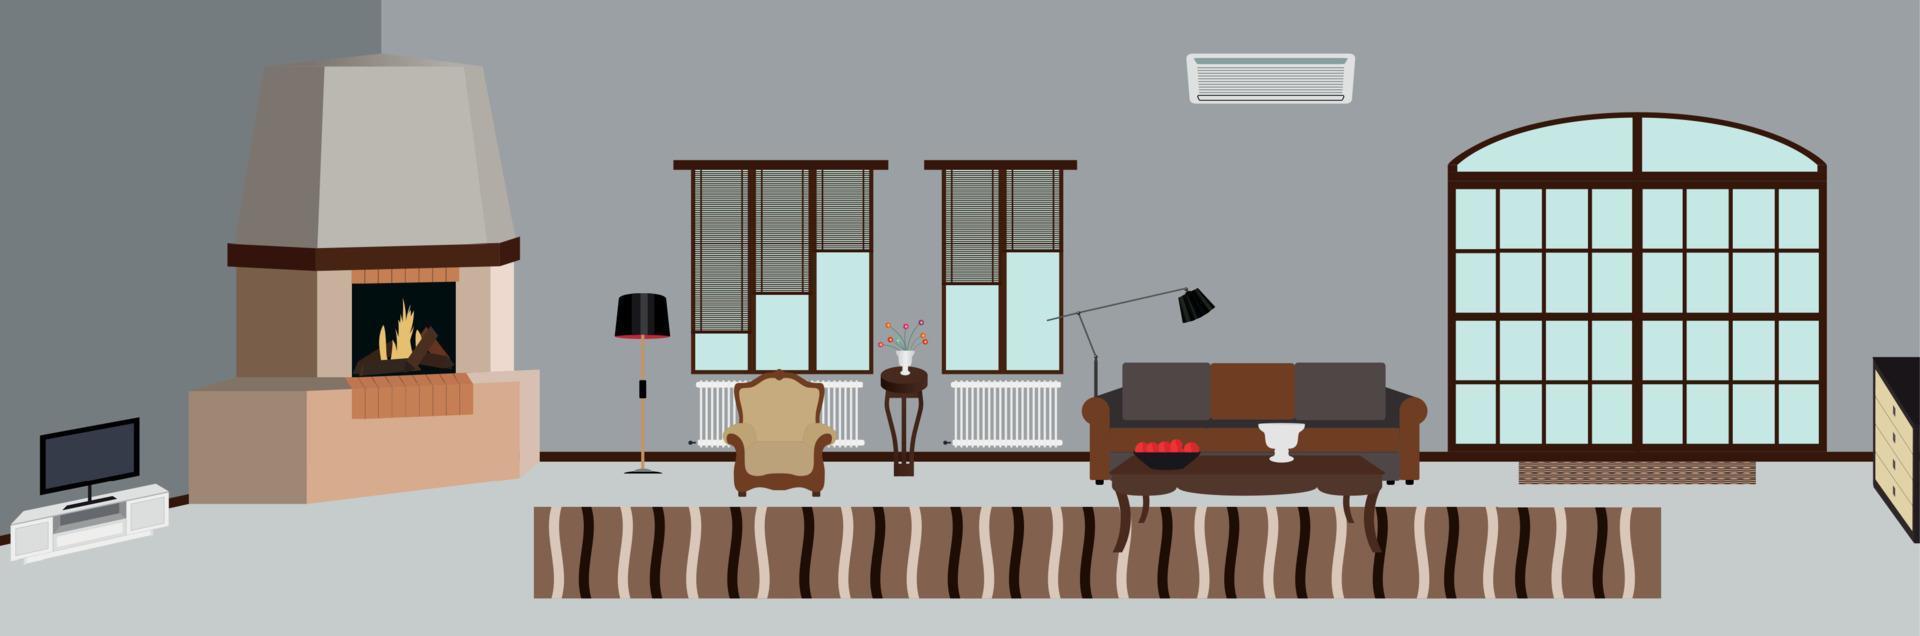 la chambre meublée avec des meubles. illustration vectorielle de style plat moderne. vecteur